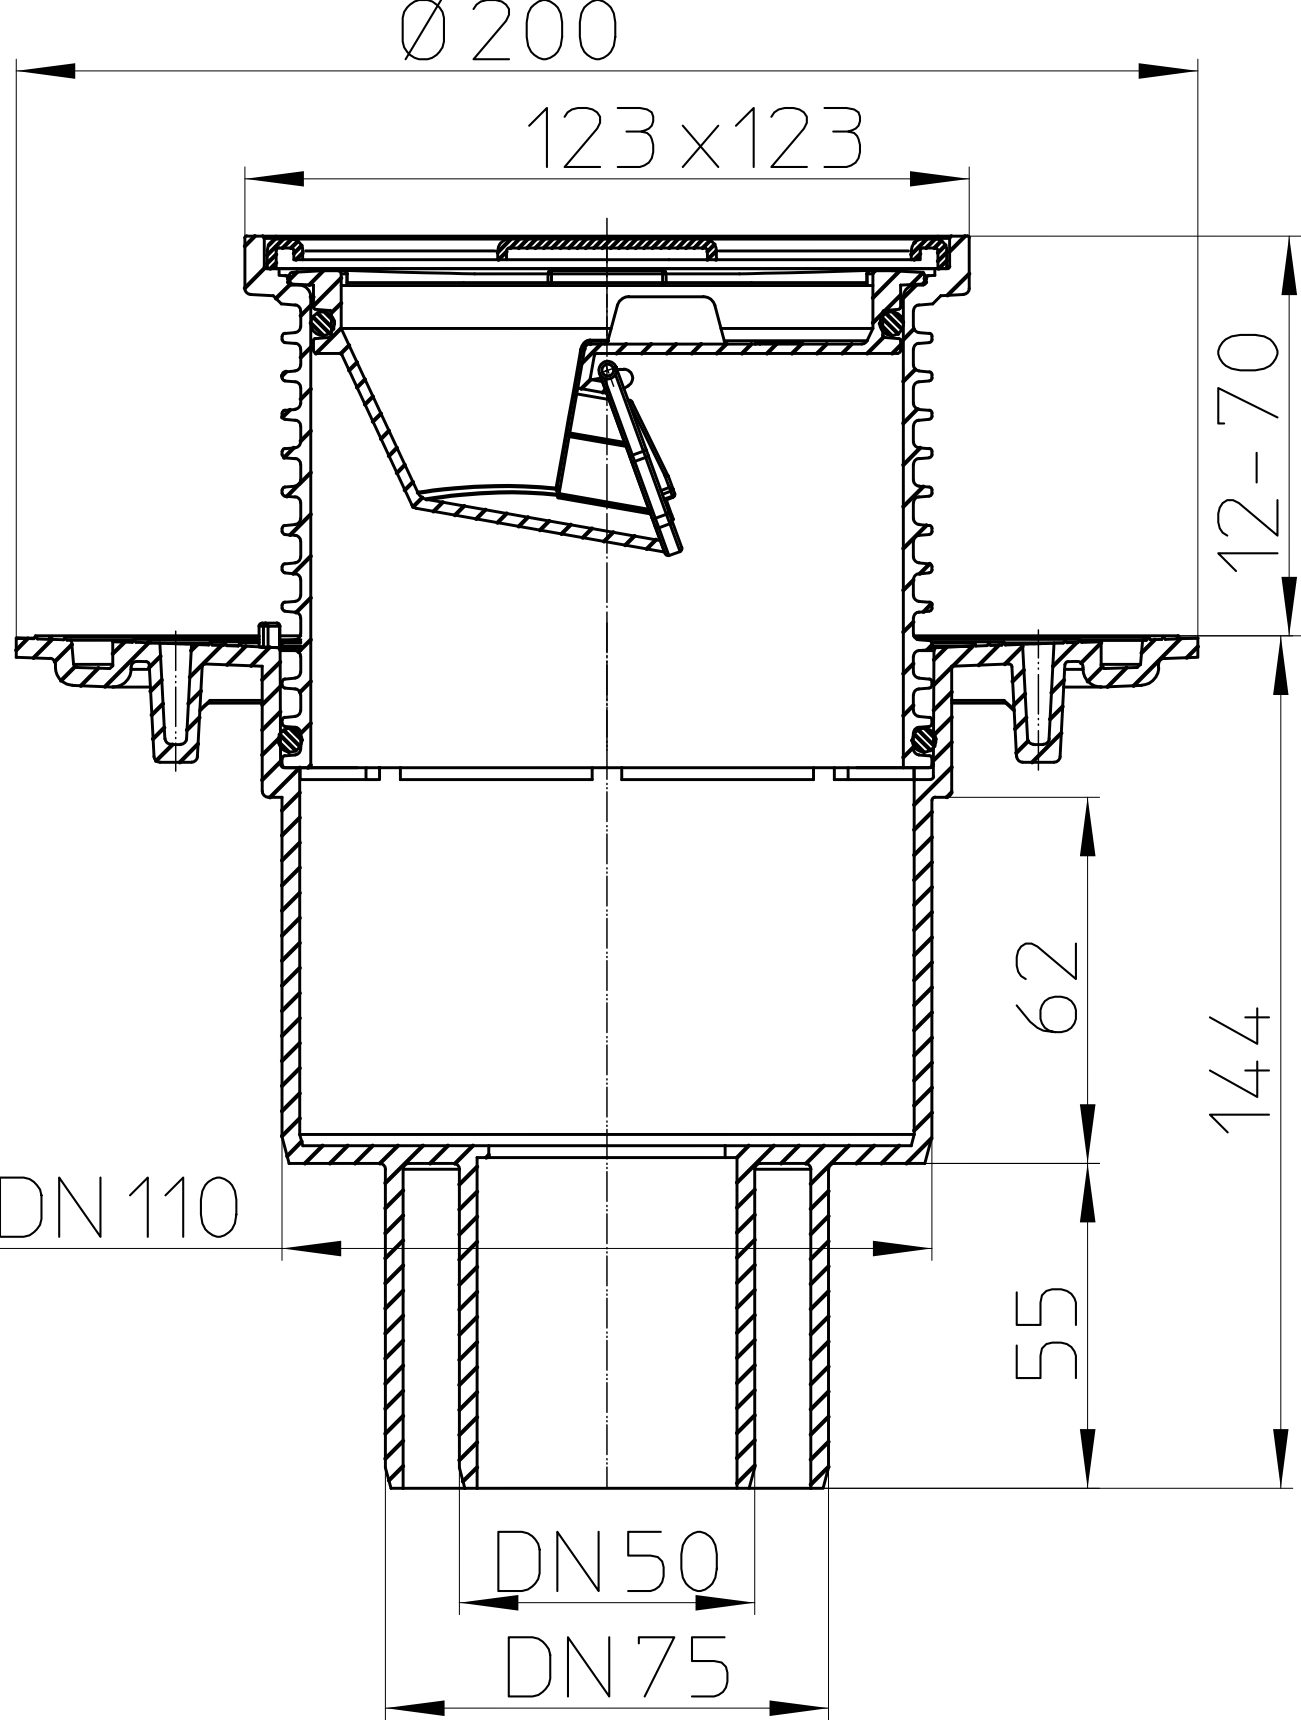 Трап вертикальный HL HL310N.2 Дн50-75-110 регулируемый для балконов и террас, корпус - полипропилен, решетка 115х115 мм - нержавеющая сталь